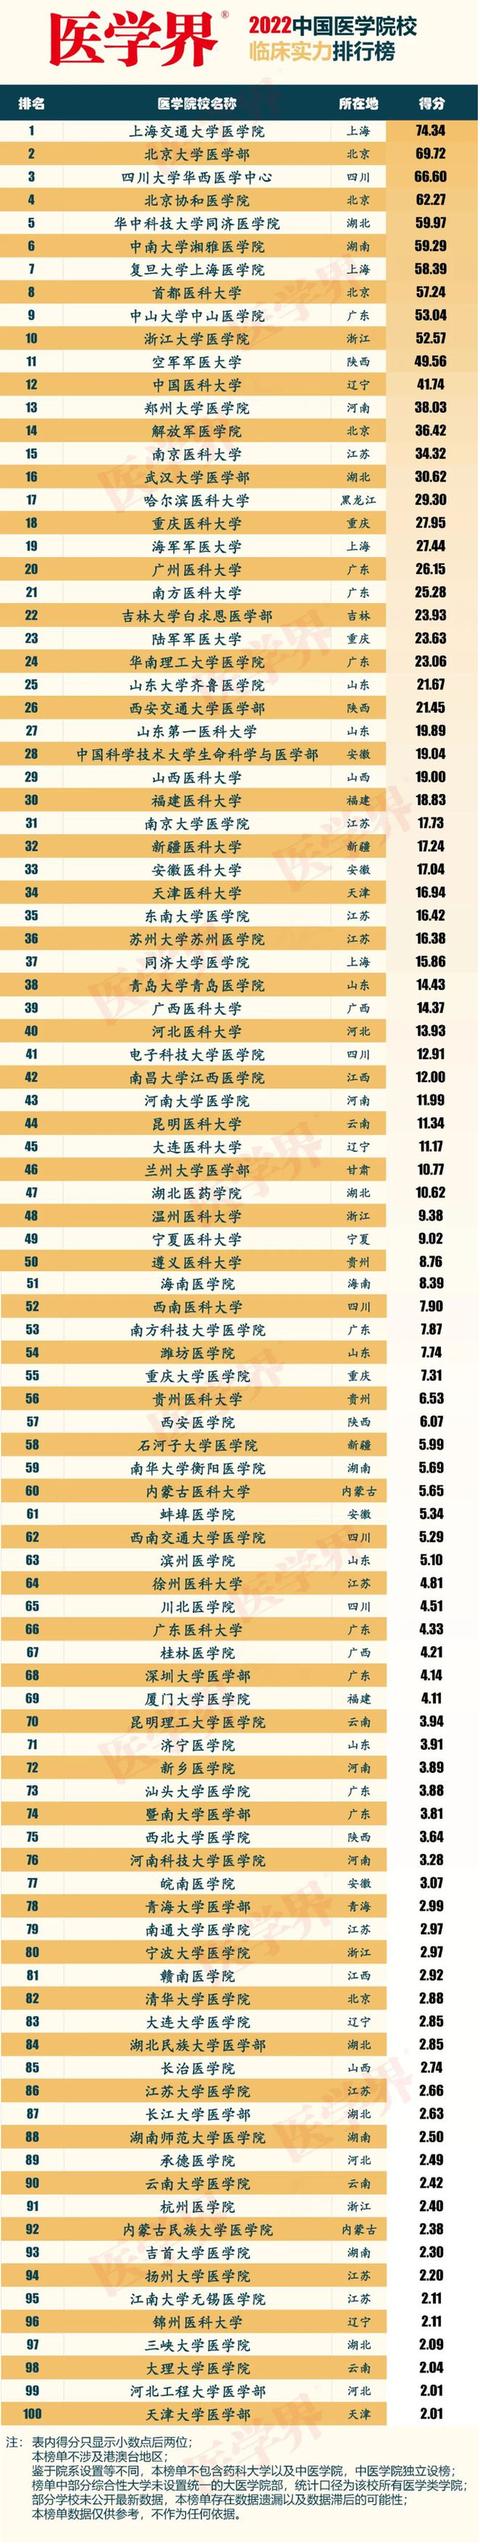 中国大学排名医学类2022年(我国重点医学院校排名)